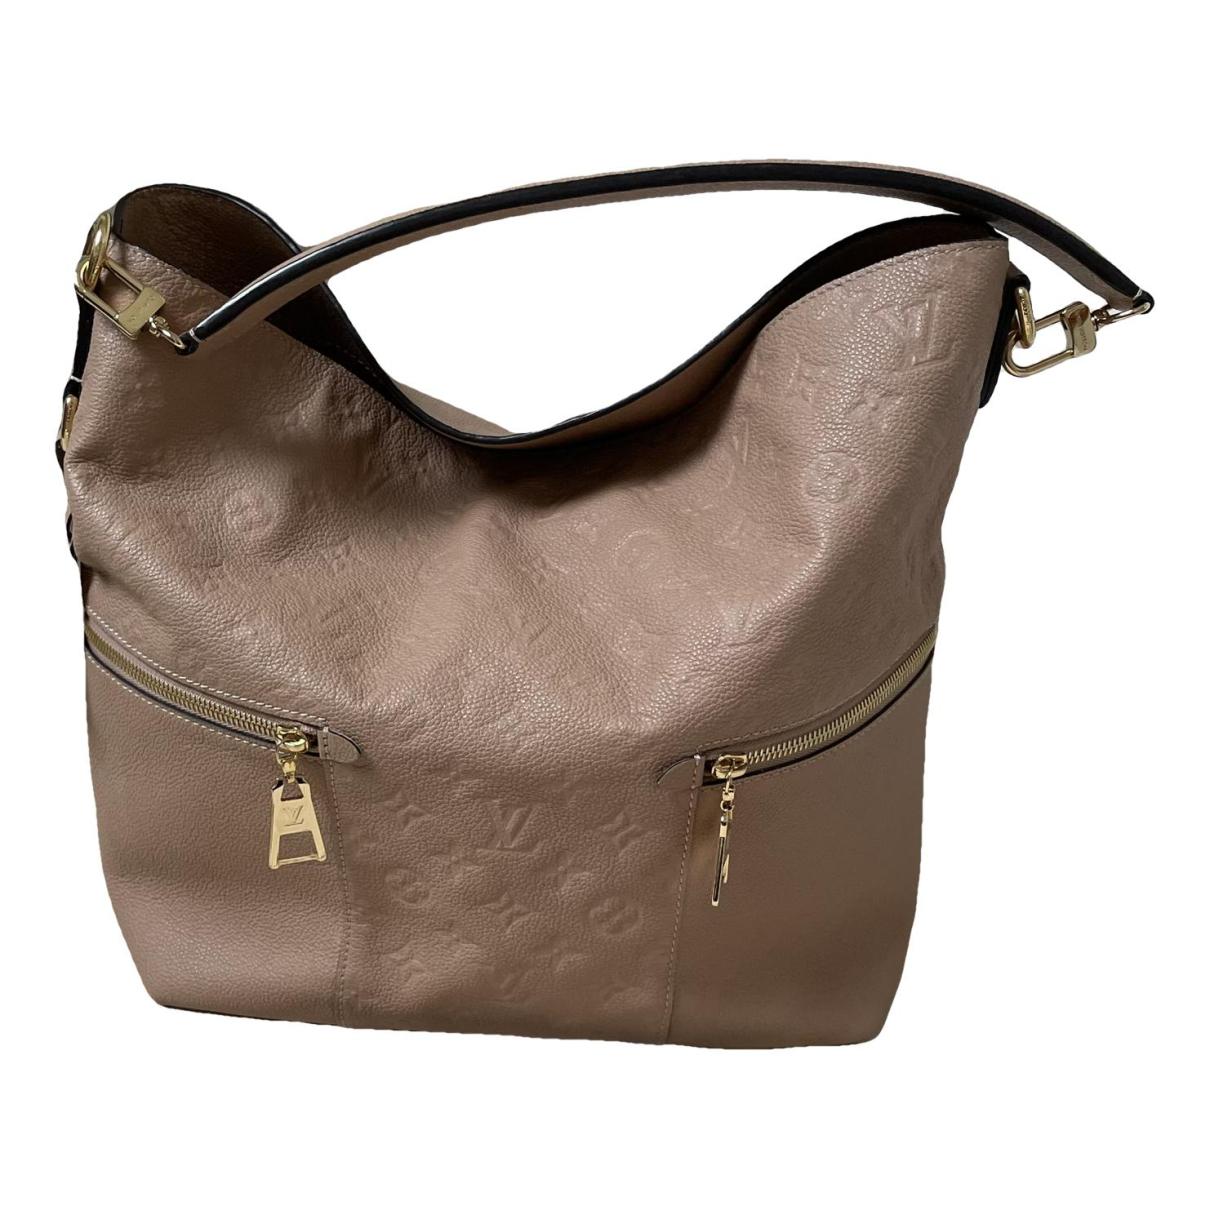 Mélie leather handbag Louis Vuitton Beige in Leather - 36976086